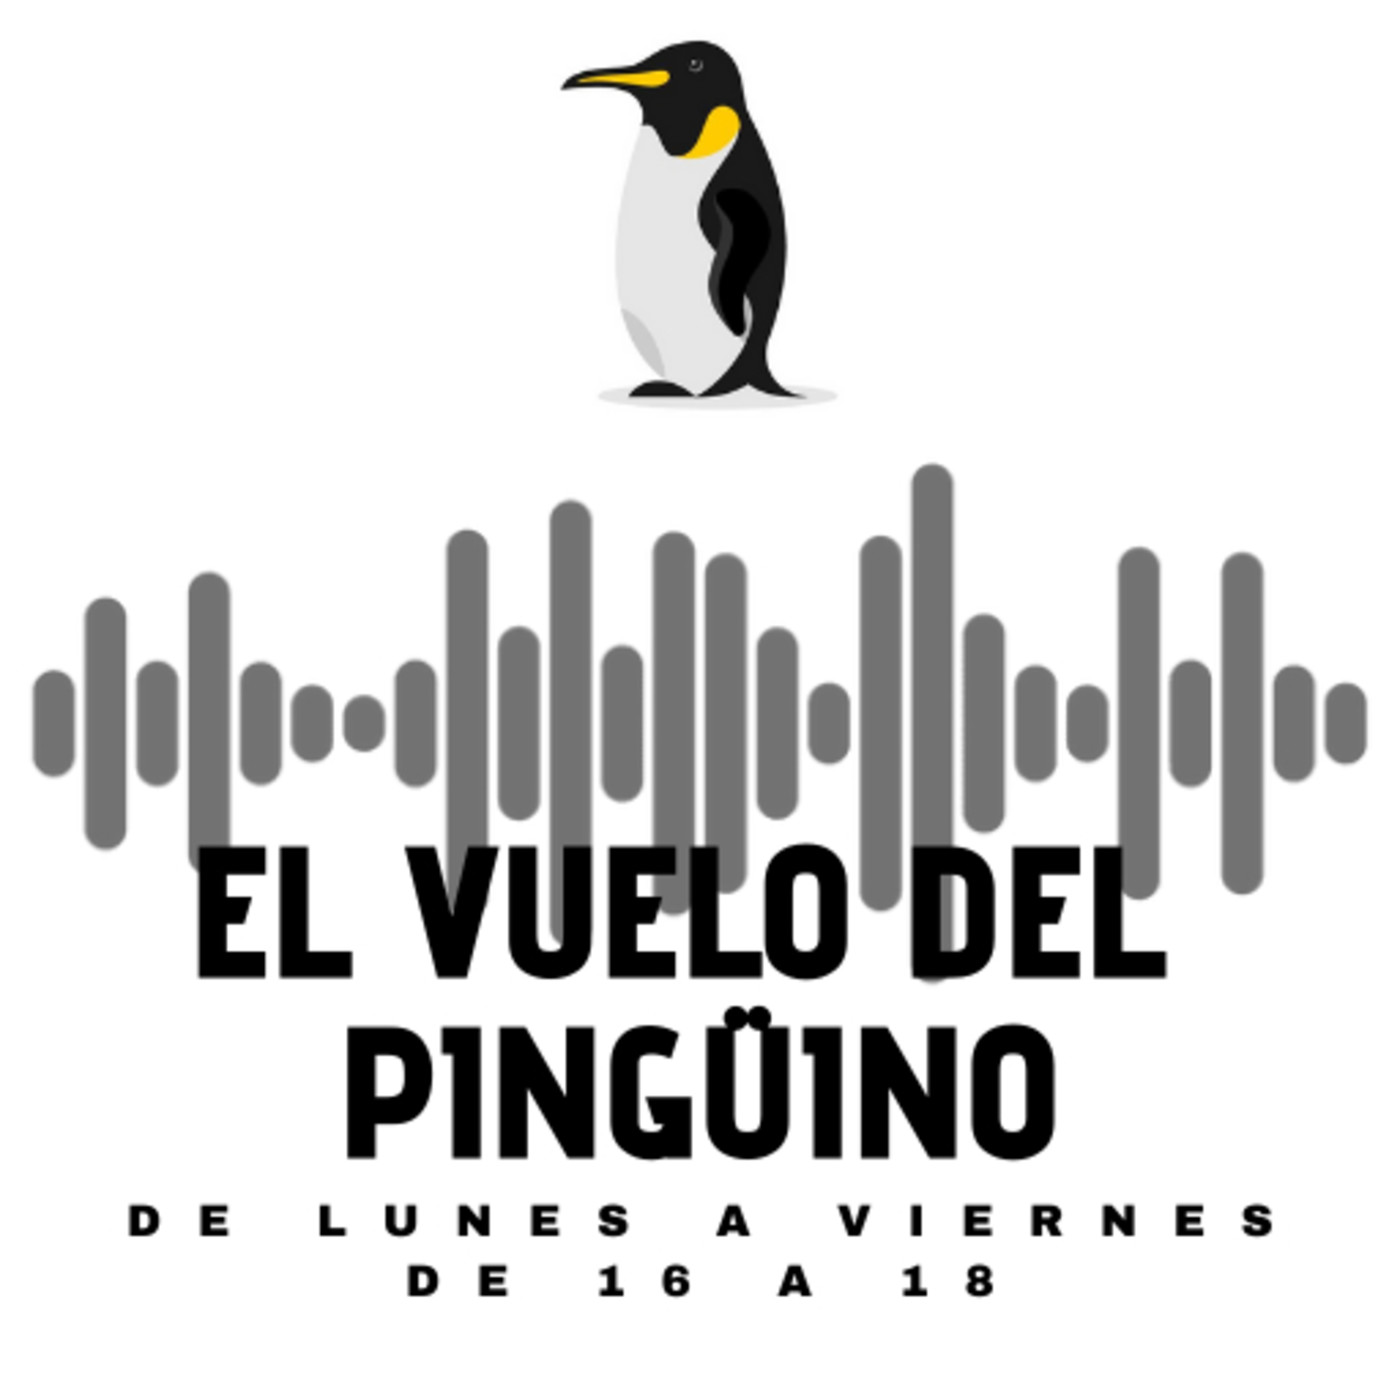 El vuelo del Pingüino - Actualidad, humor, cultura y música - 13-07-2021